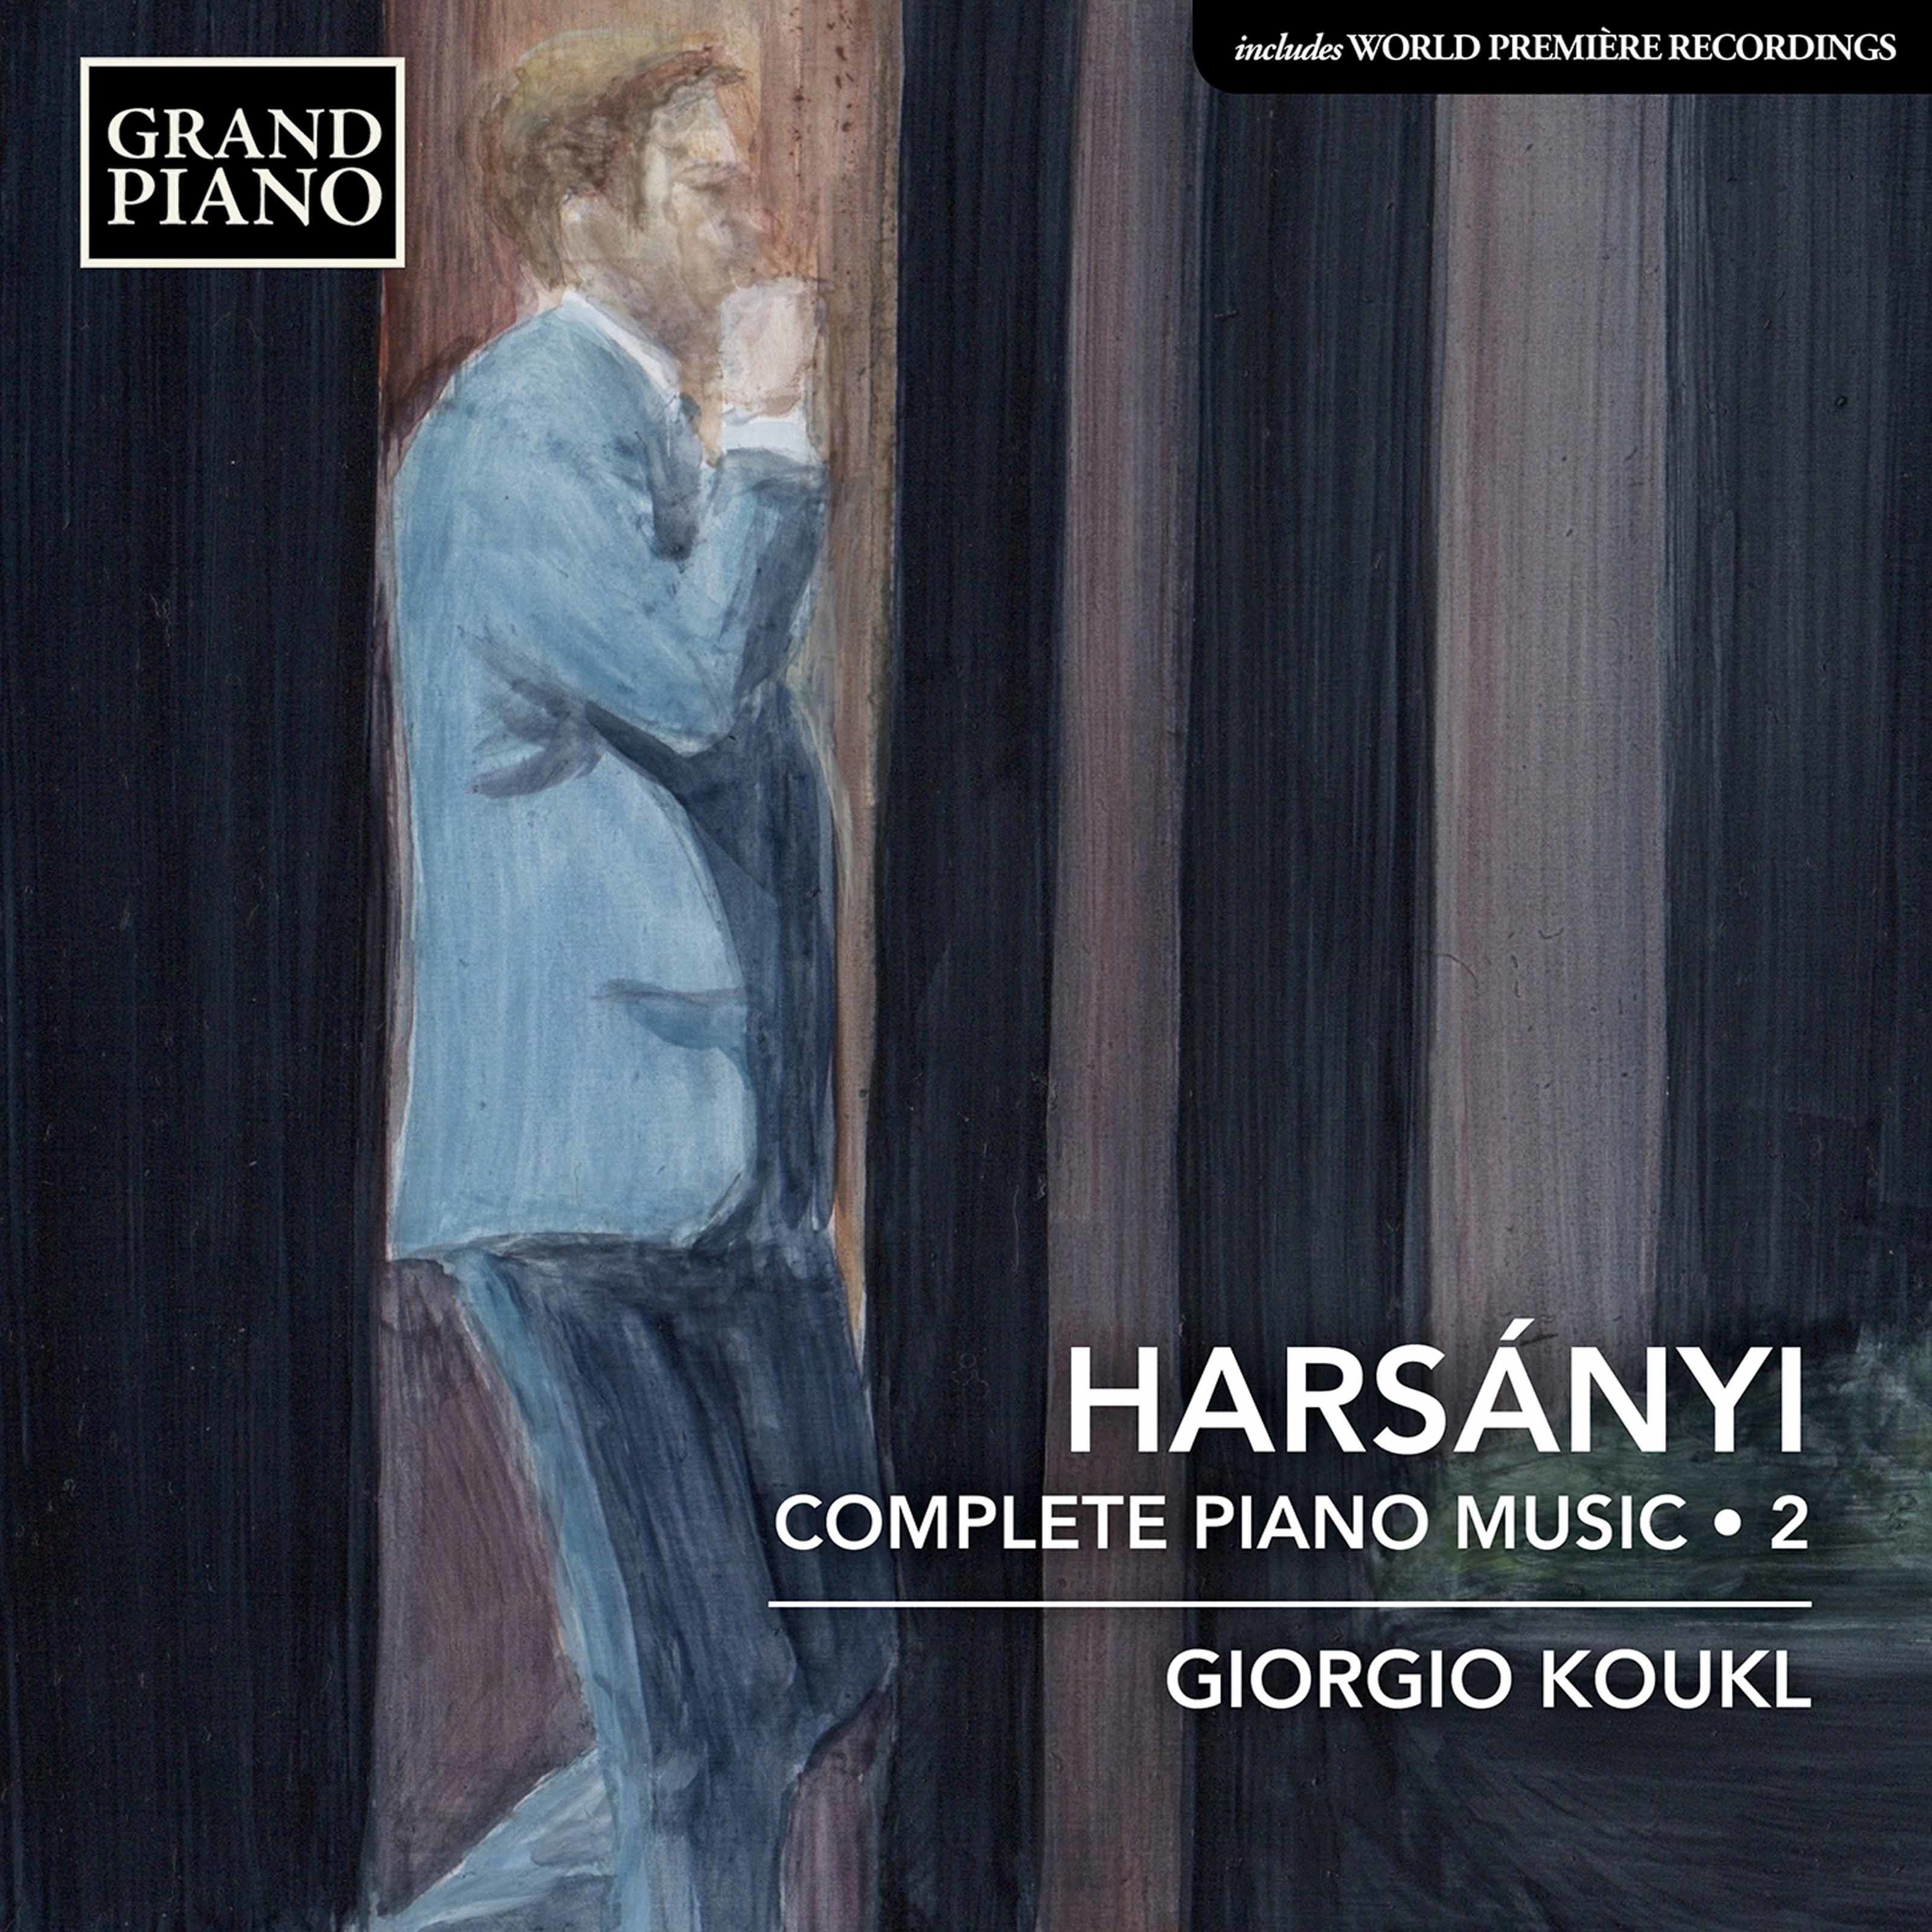 Giorgio Koukl – Harsanyi: Complete Piano Works, Vol. 2 (2020) [FLAC 24bit/96kHz]